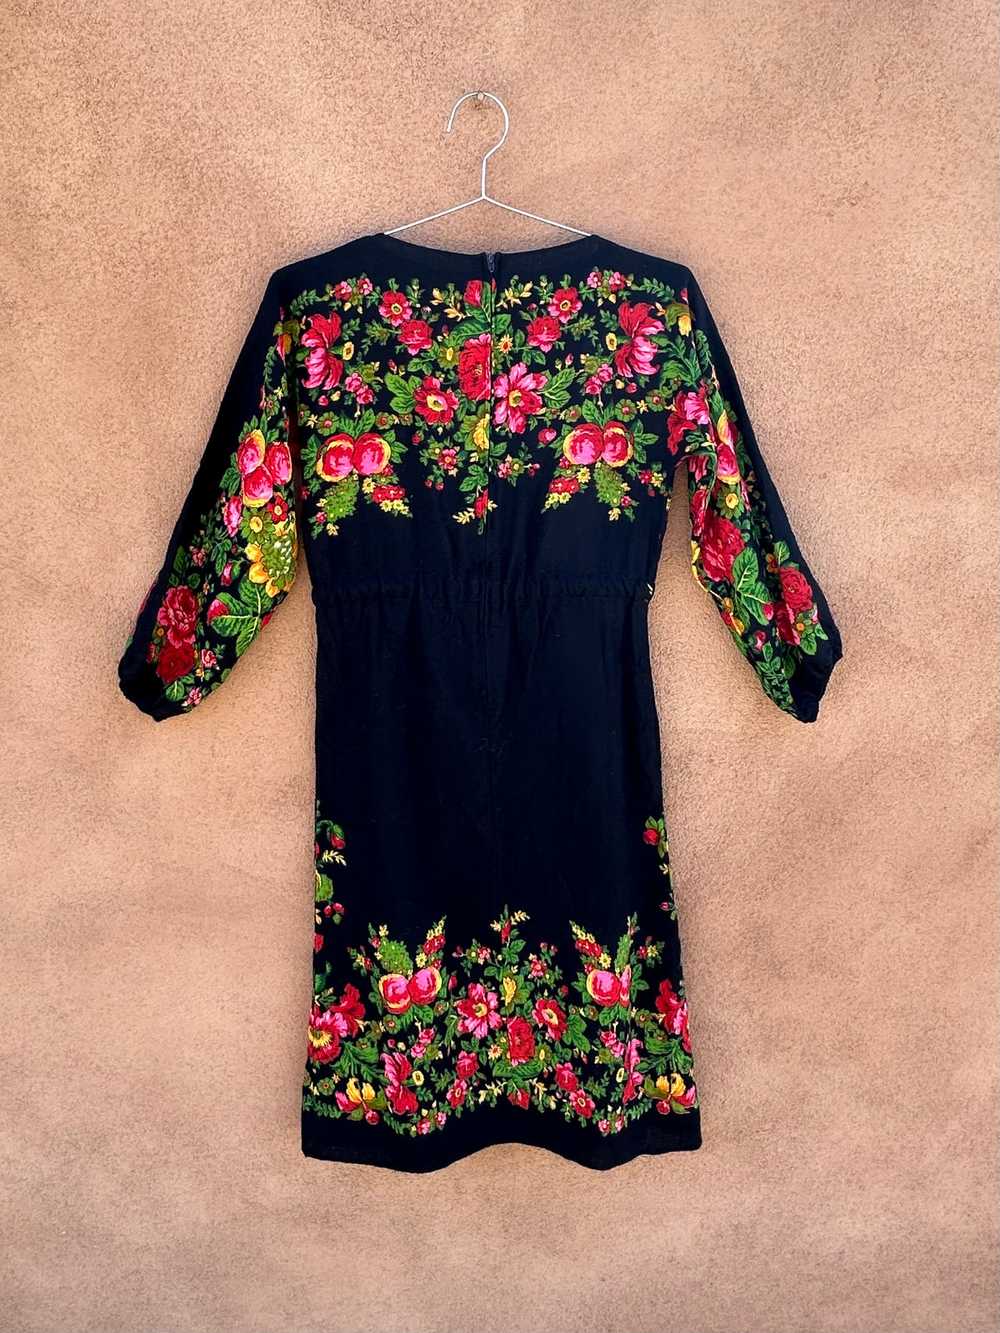 Black Floral Dress - Wool Blend - image 3